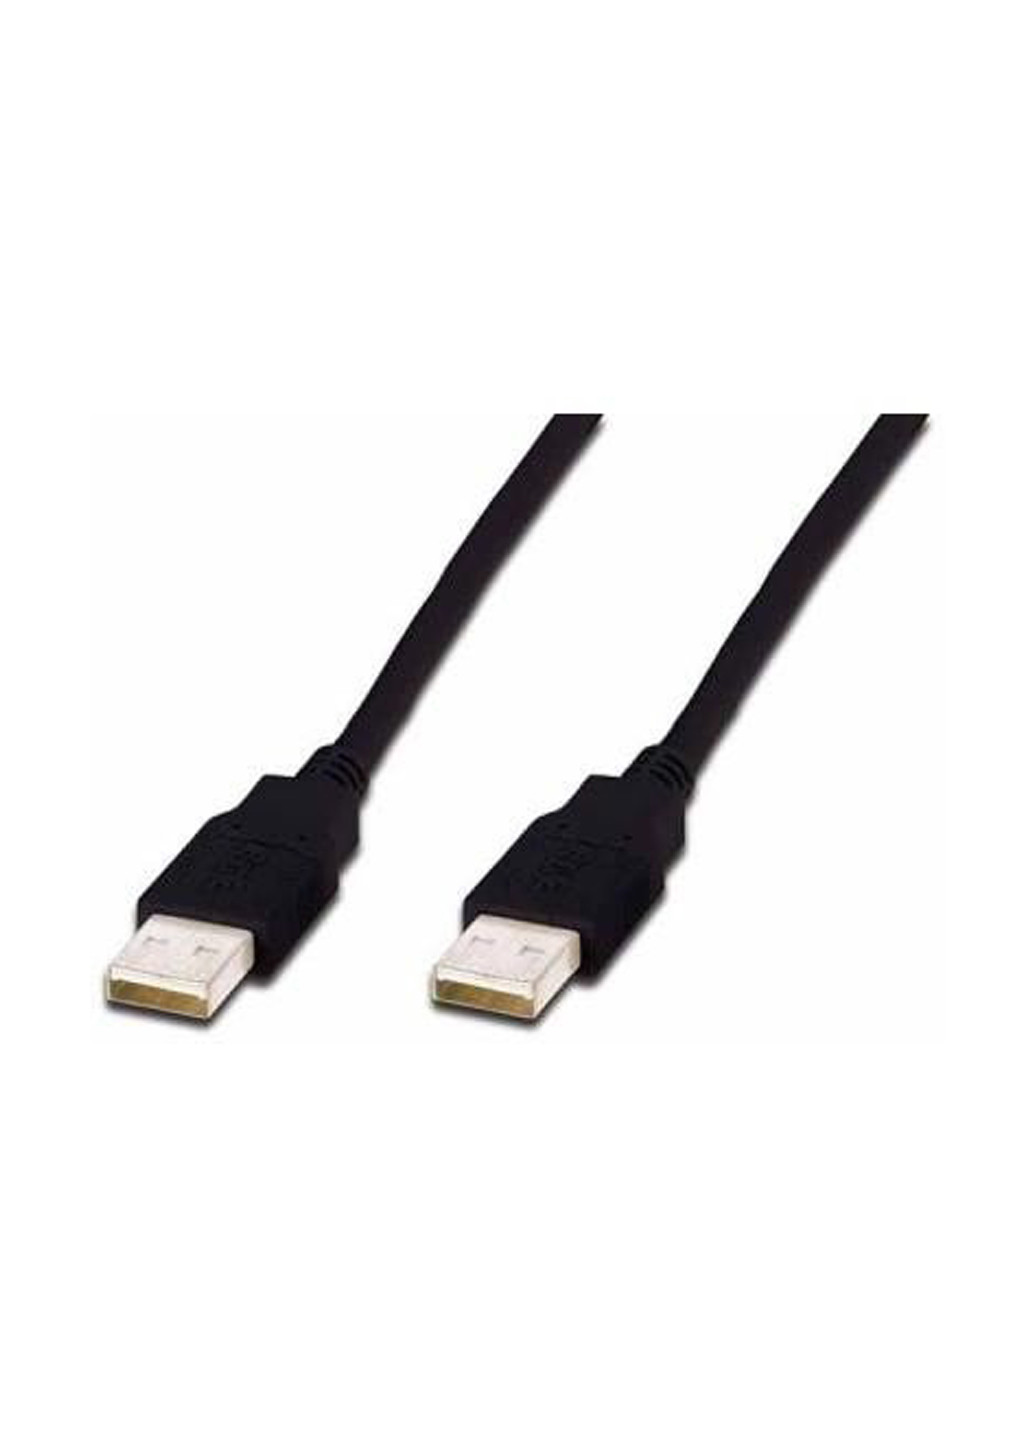 Кабель Digitus ASSMANN USB 2.0 (AM/AM) 3m, black (AK-300100-030-S) чёрный